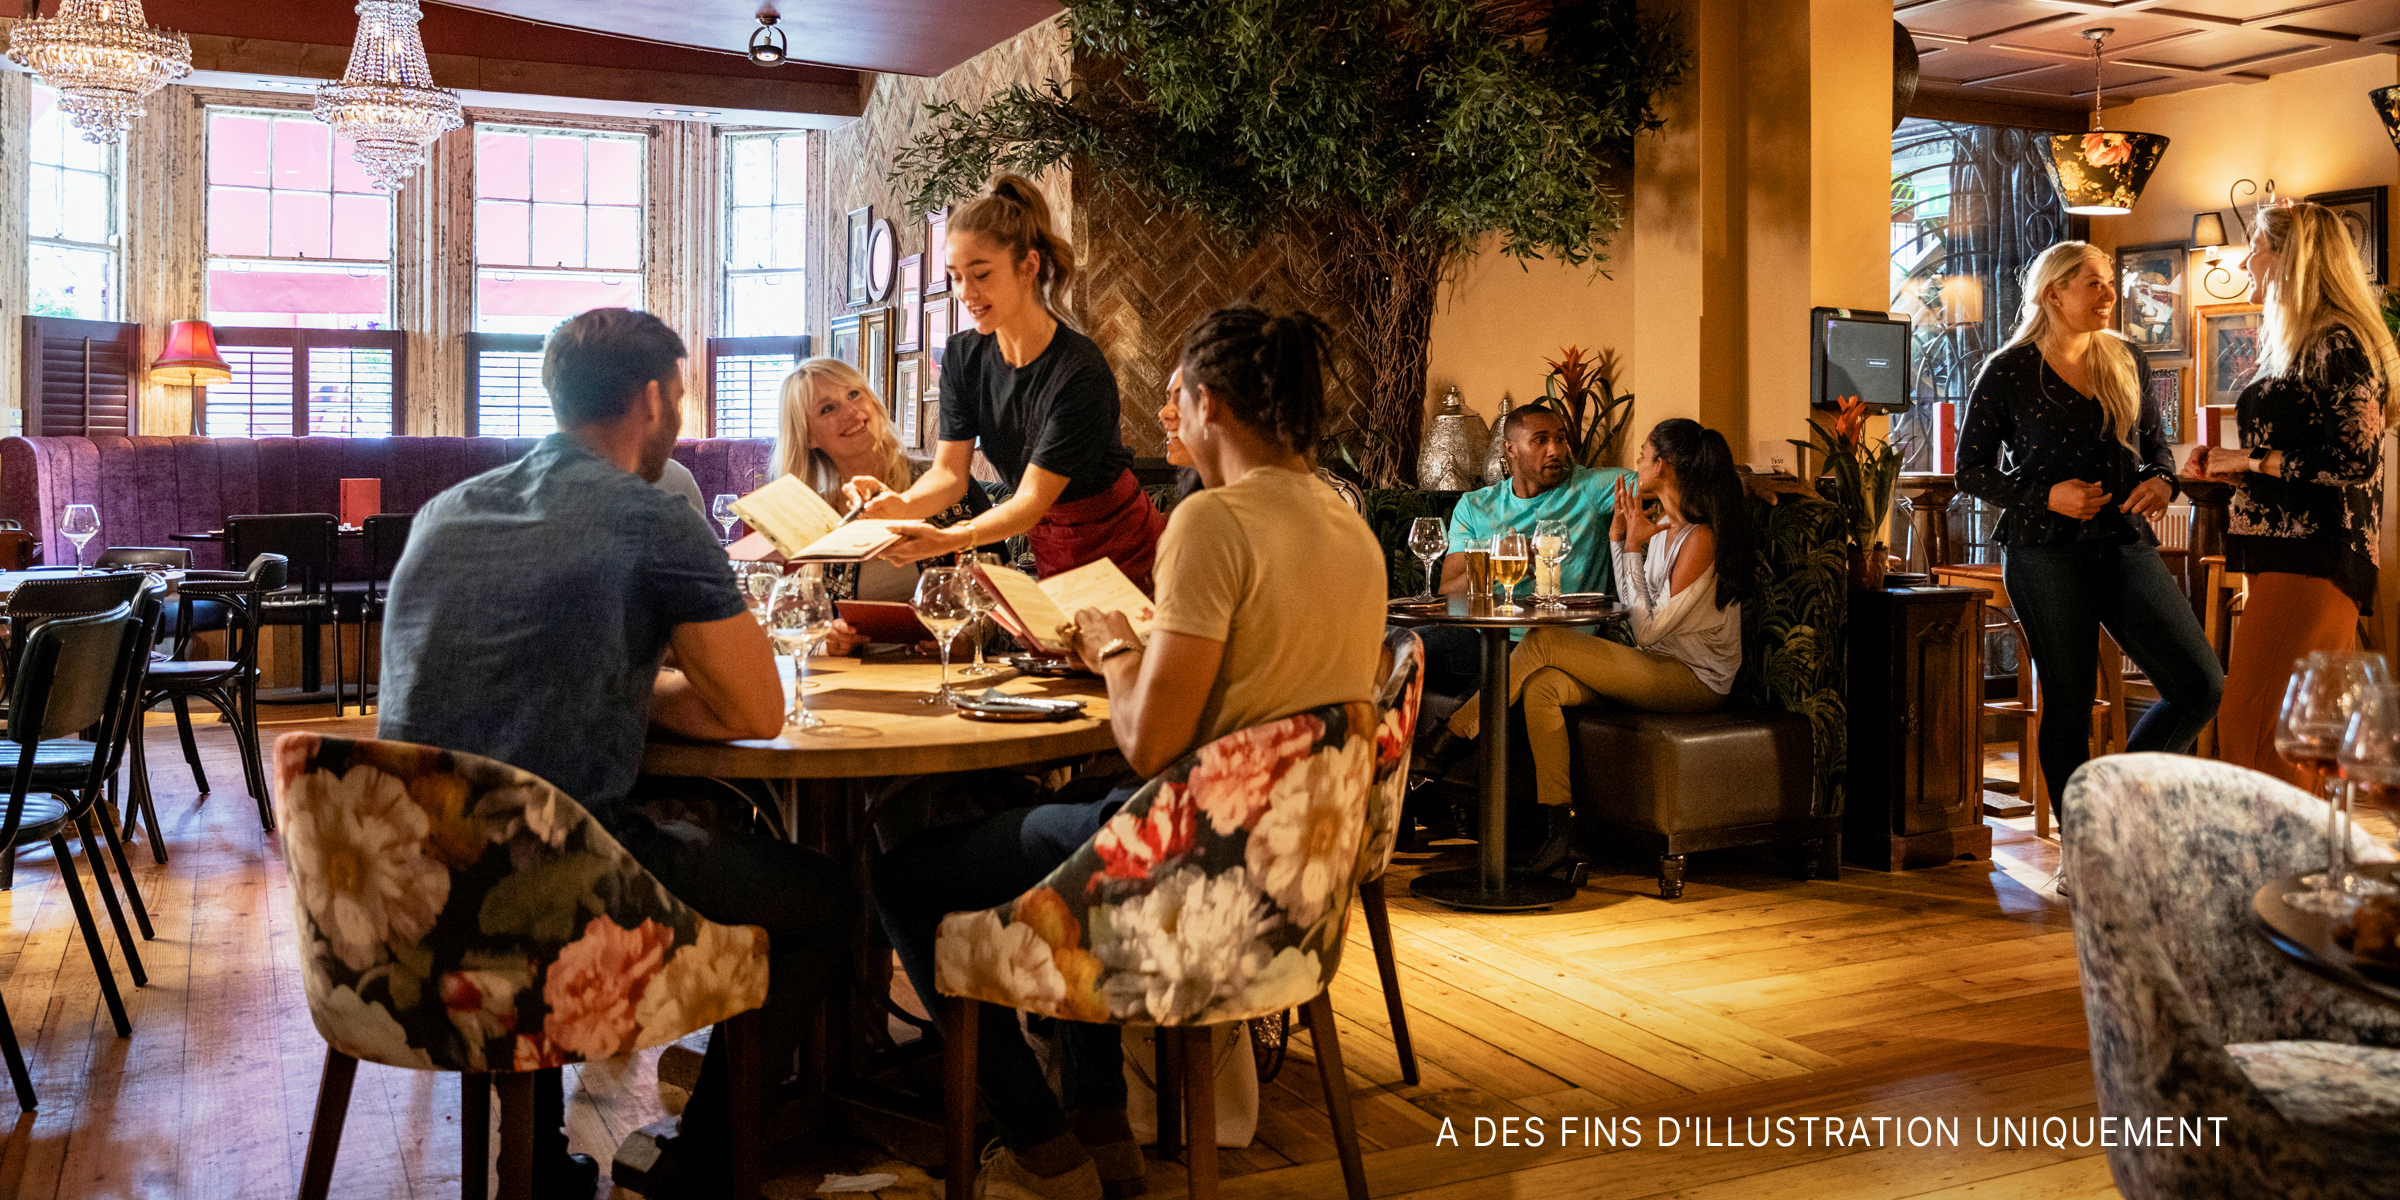 Des personnes dînant dans un restaurant | Source : Shutterstock